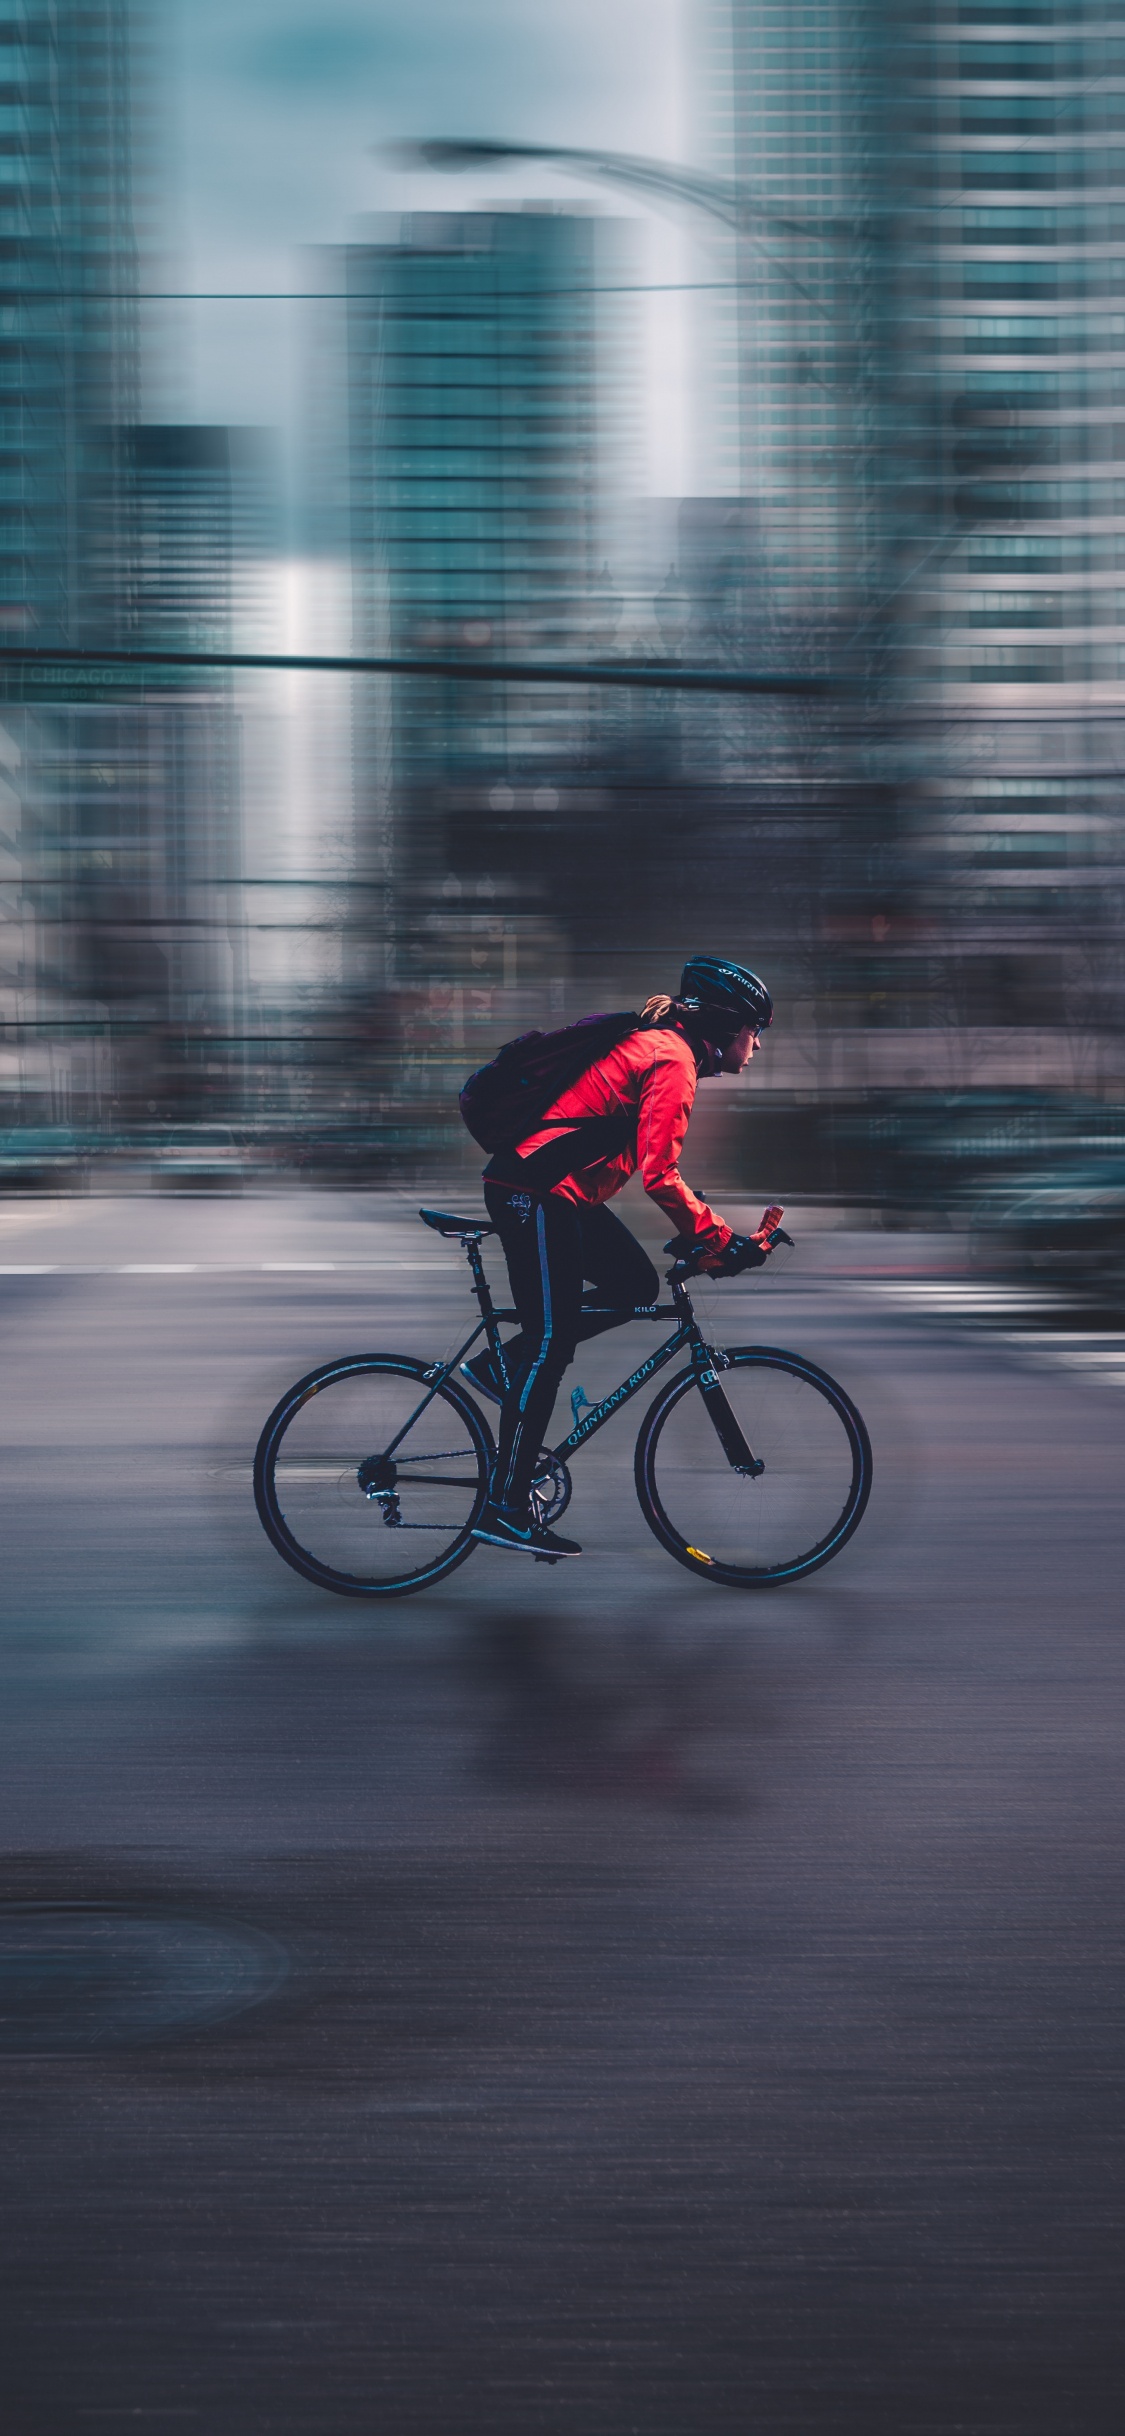 Mann in Roter Jacke, Der Tagsüber Fahrrad Auf Der Straße Fährt. Wallpaper in 1125x2436 Resolution